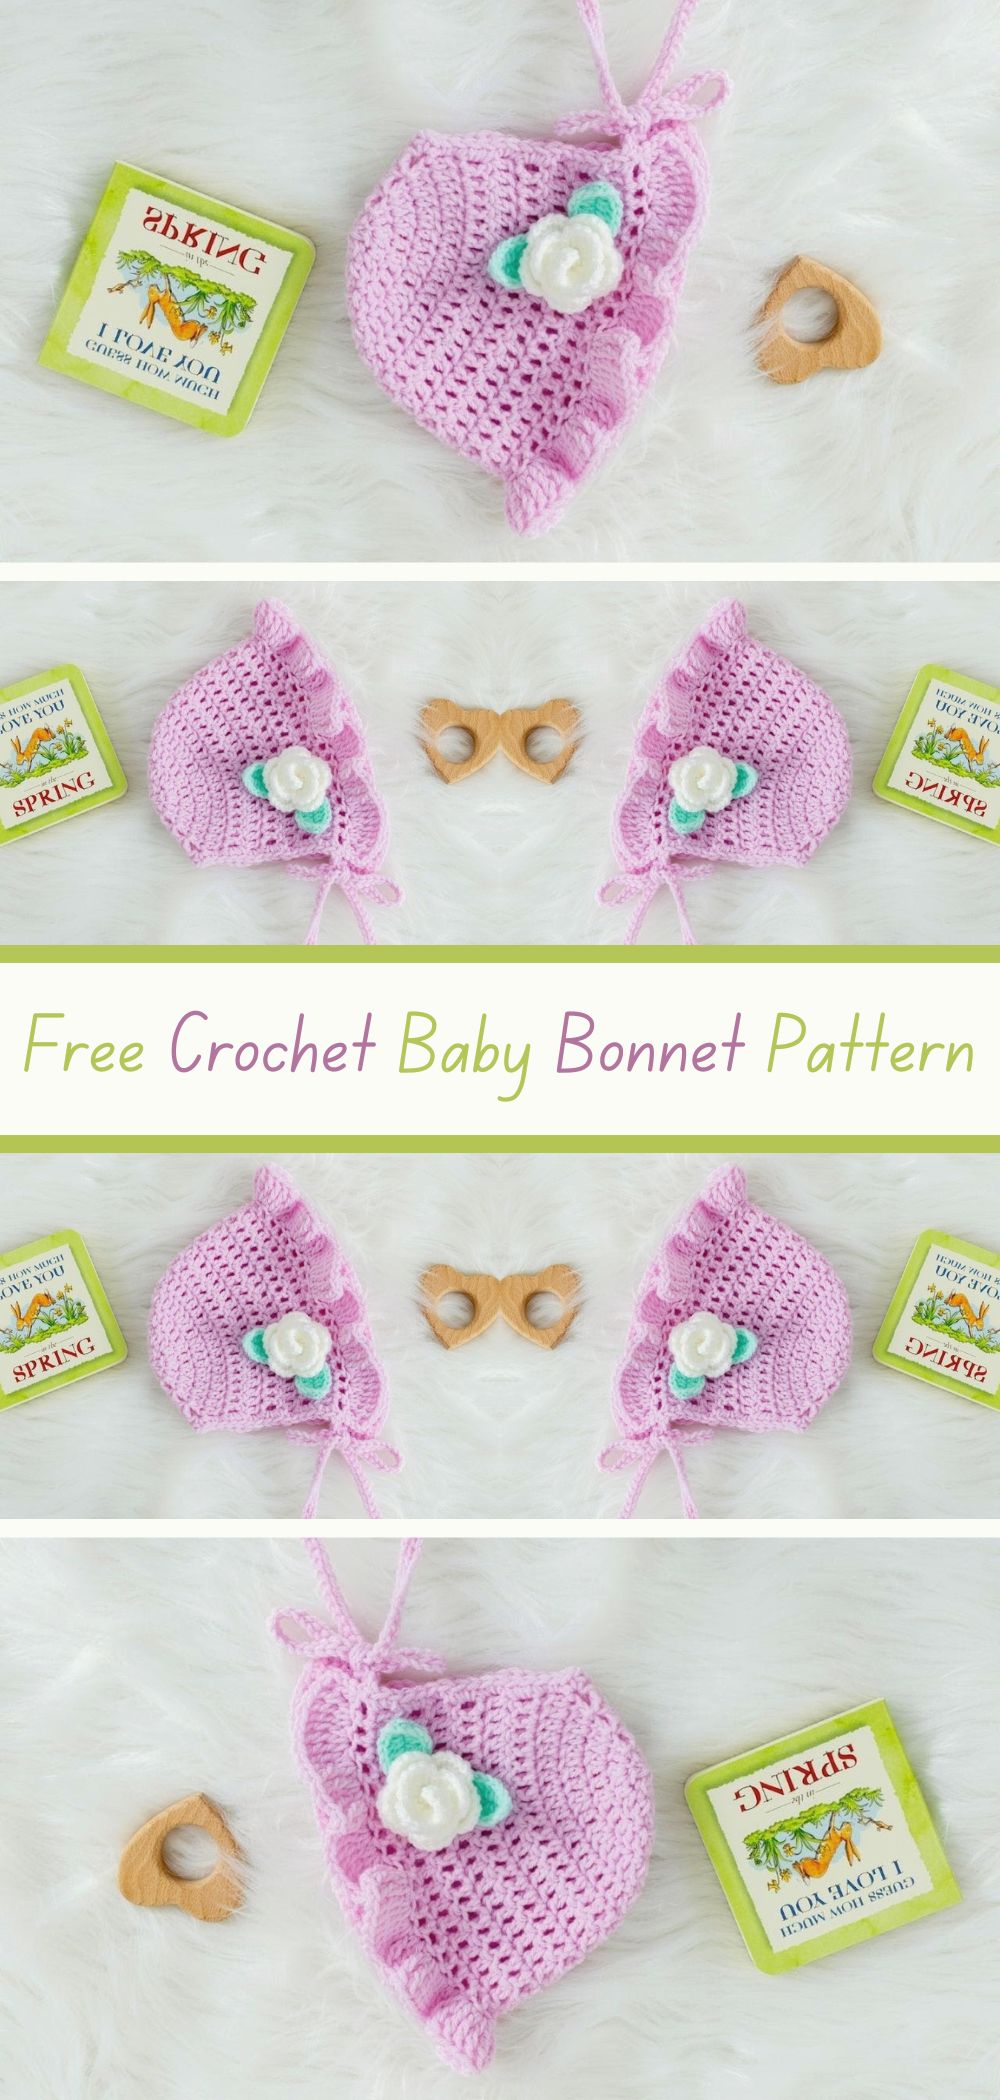 Free Crochet Baby Bonnet Pattern - Craft a sweet and charming baby bonnet with this free crochet pattern